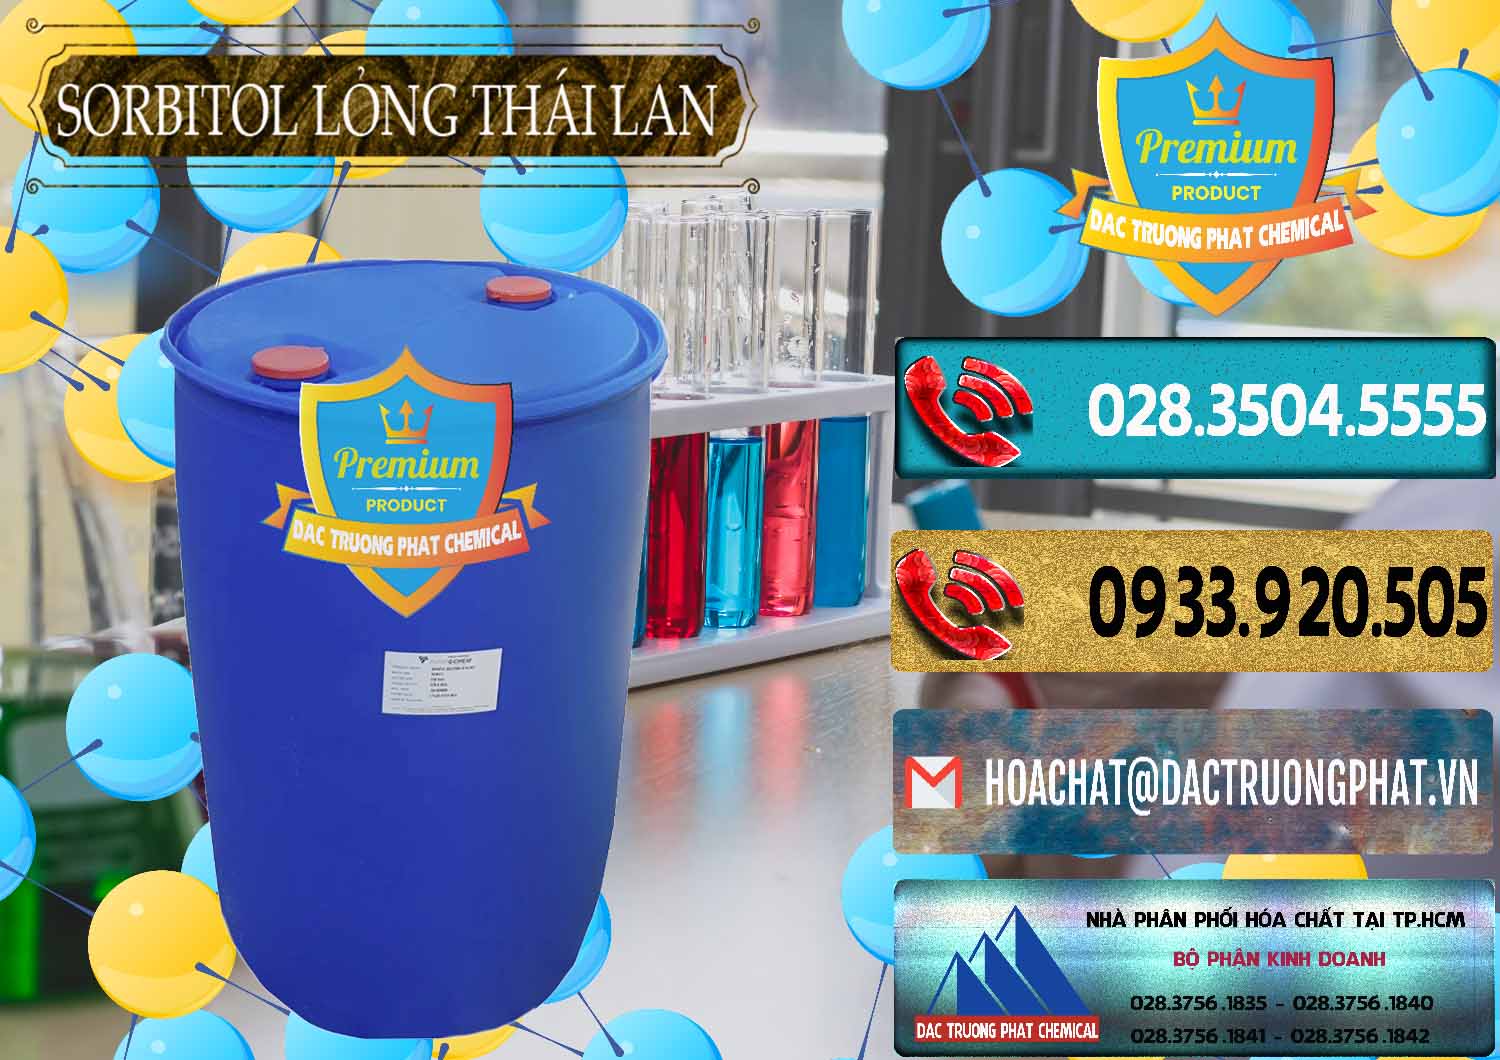 Cty nhập khẩu _ bán Sorbitol - C6H14O6 Lỏng 70% Food Grade Thái Lan Thailand - 0341 - Cty chuyên cung cấp ( kinh doanh ) hóa chất tại TP.HCM - hoachatdetnhuom.com